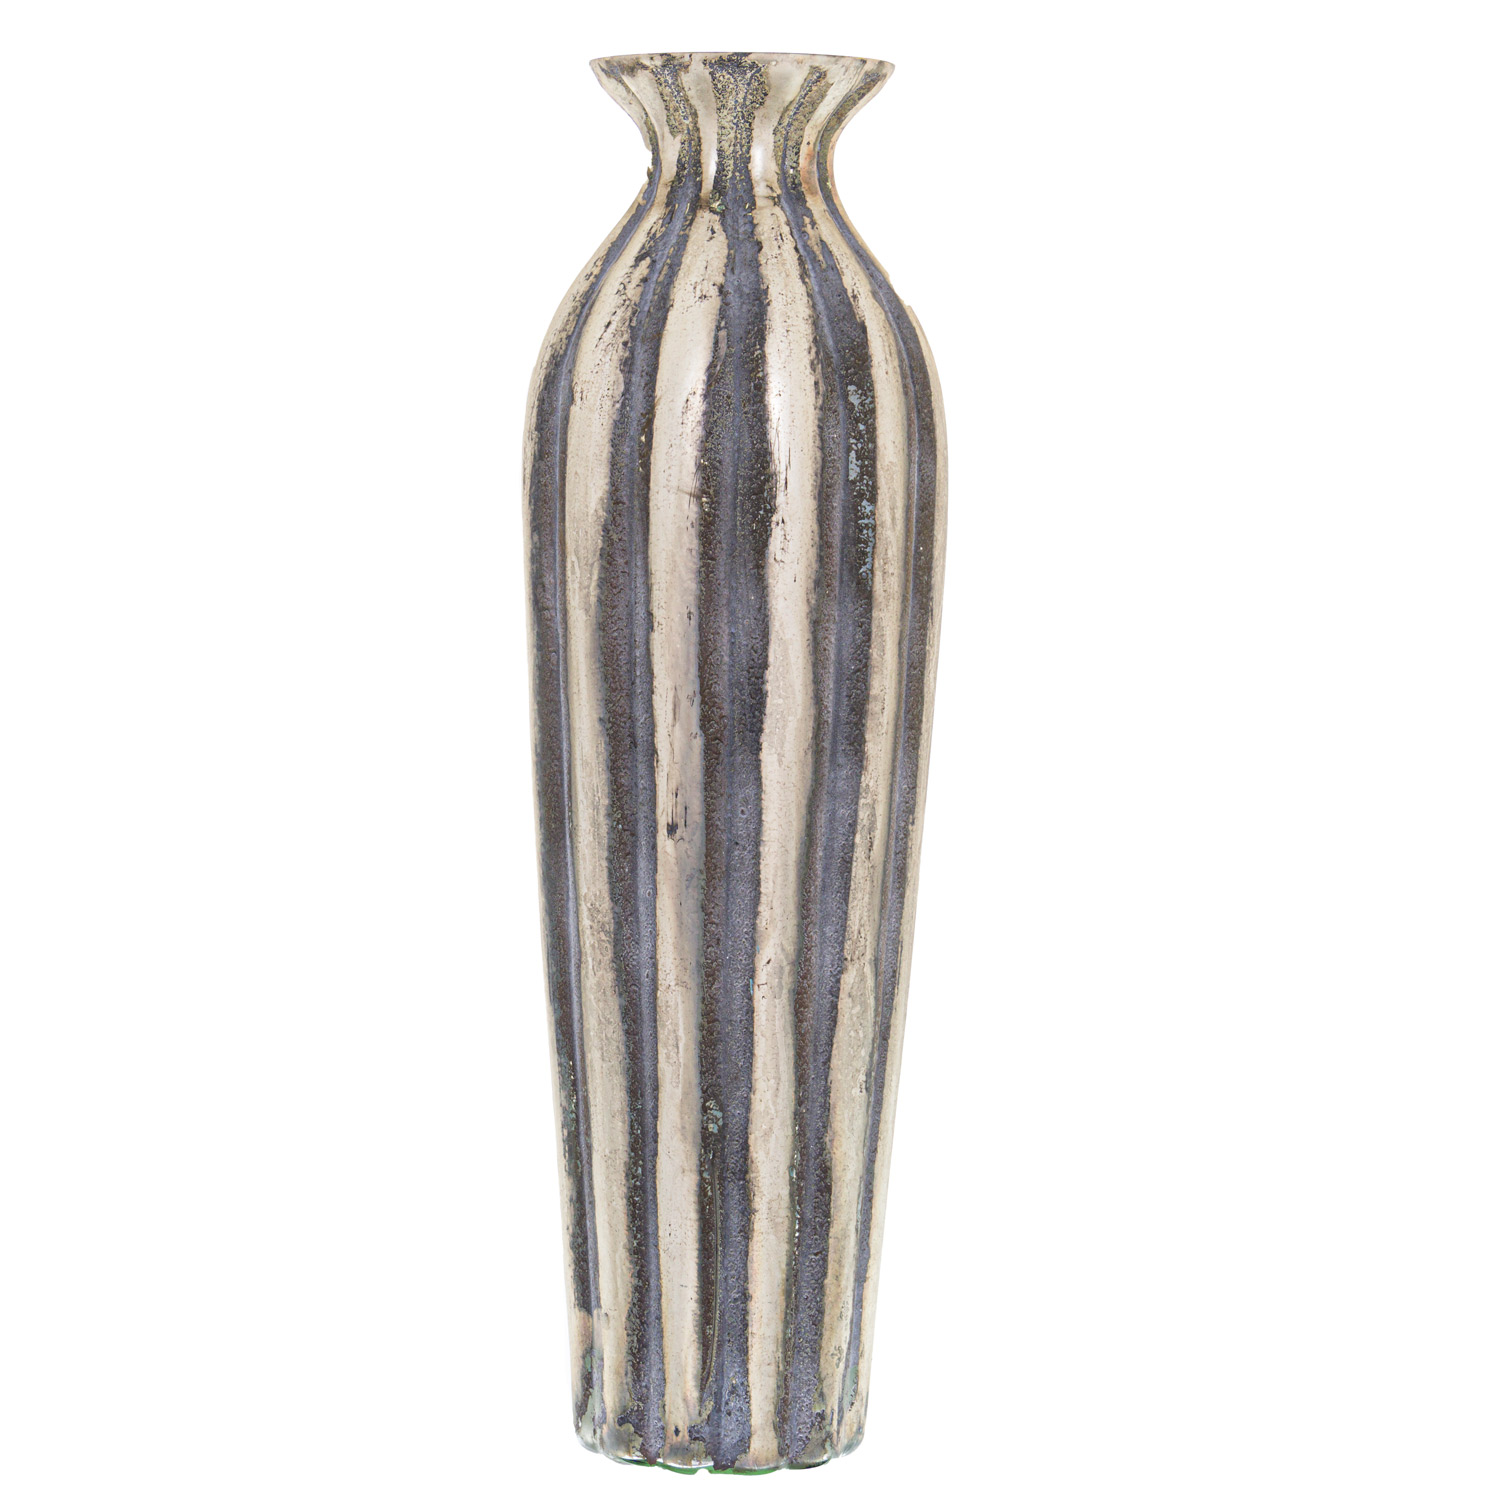 Burnished And Grey Striped Medium Vase - Image 1